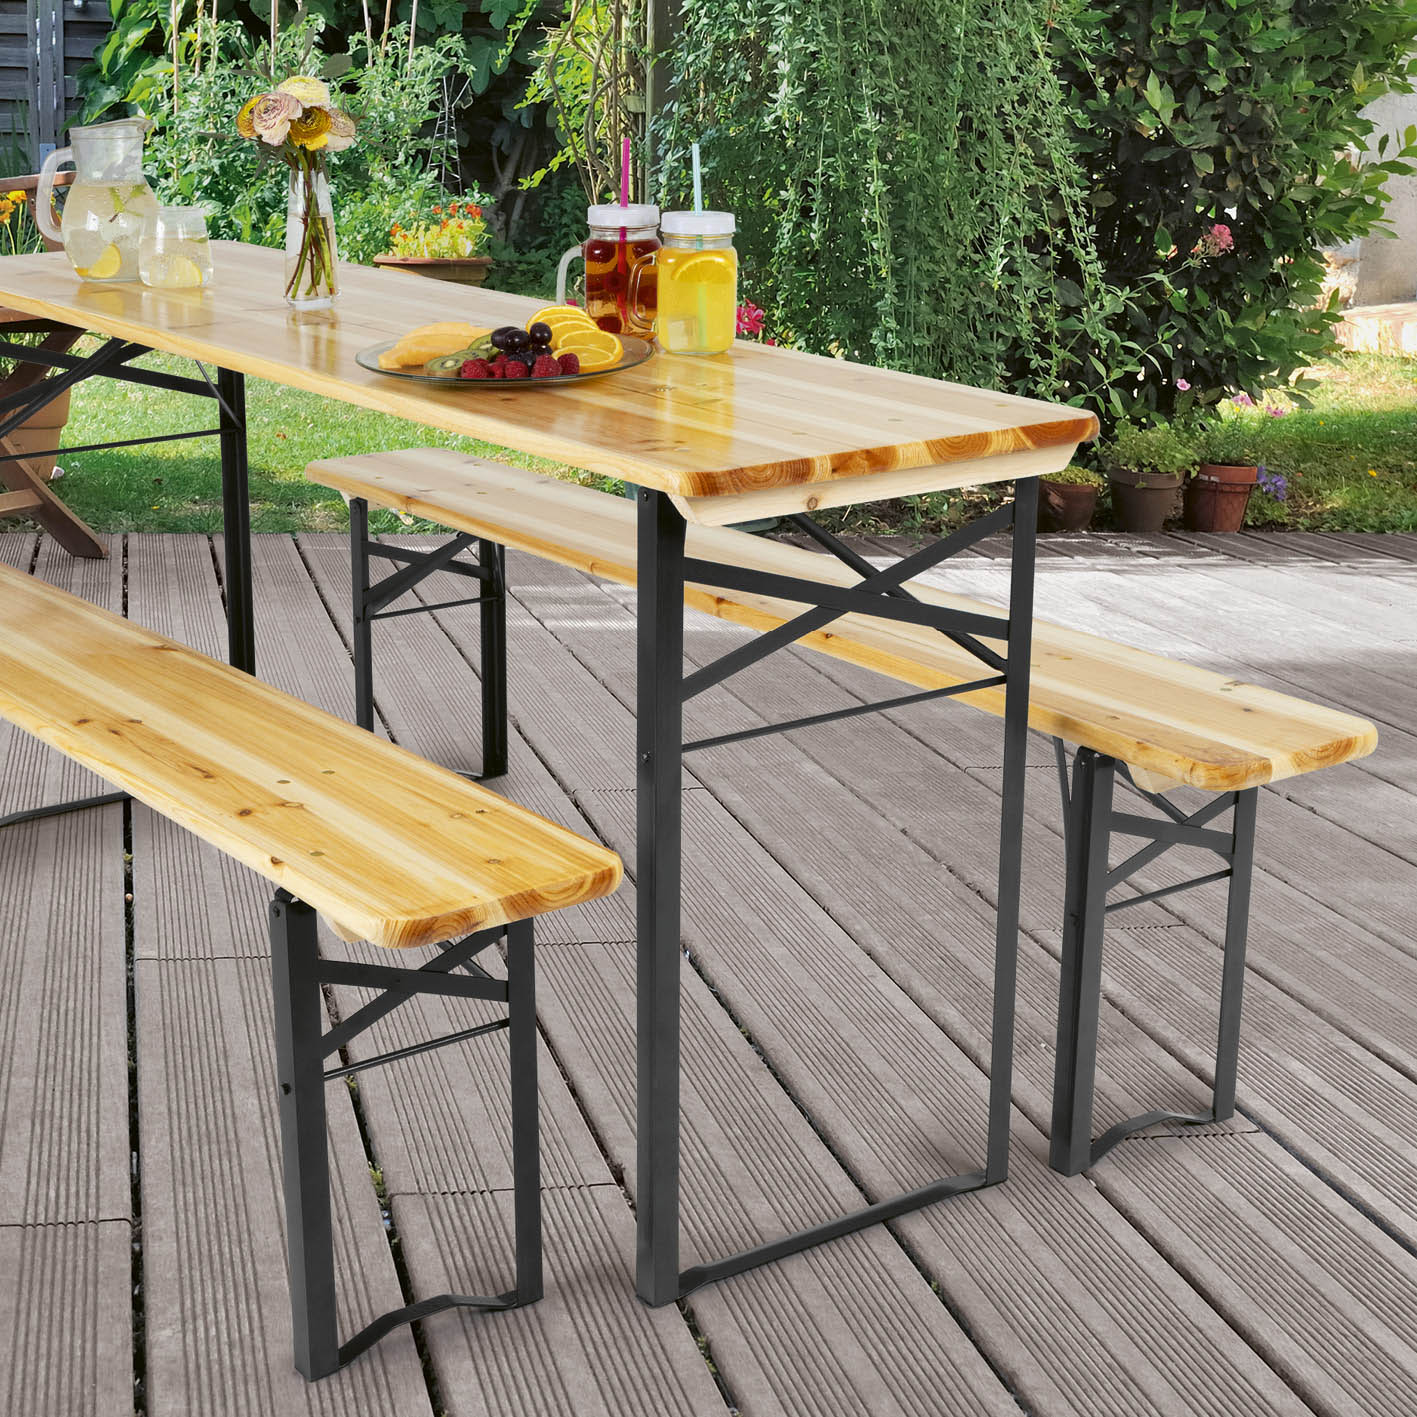 Bierzeltgarnitur Set (1 Tisch mit 2 Sitzbänken) - 170 cm - holzfarben/schwarz